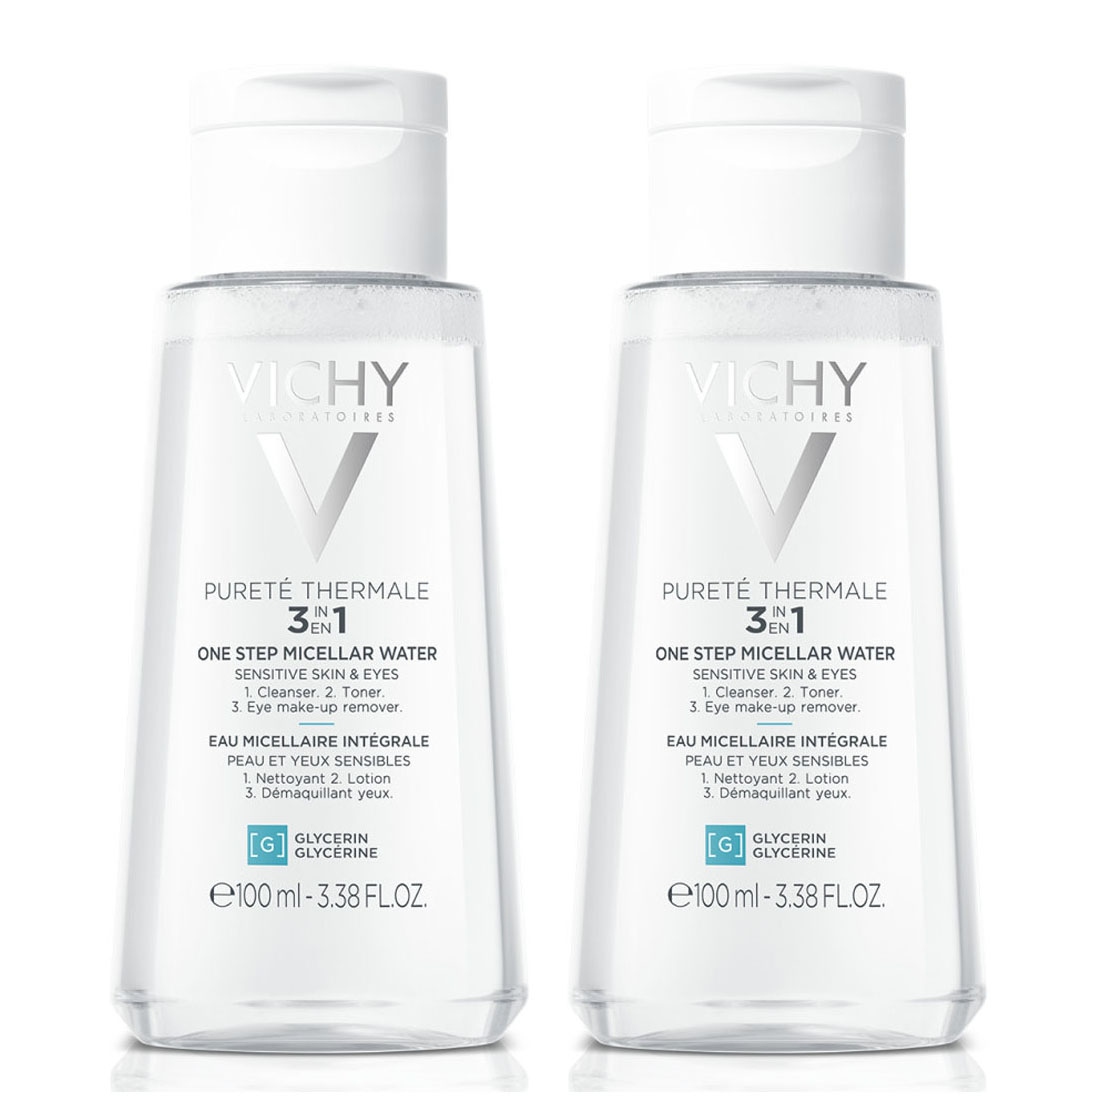 Vichy Мицеллярная вода универсальная для чувствительной кожи лица и вокруг глаз, 2 х 100 мл (Vichy, Purete Thermal) цена и фото